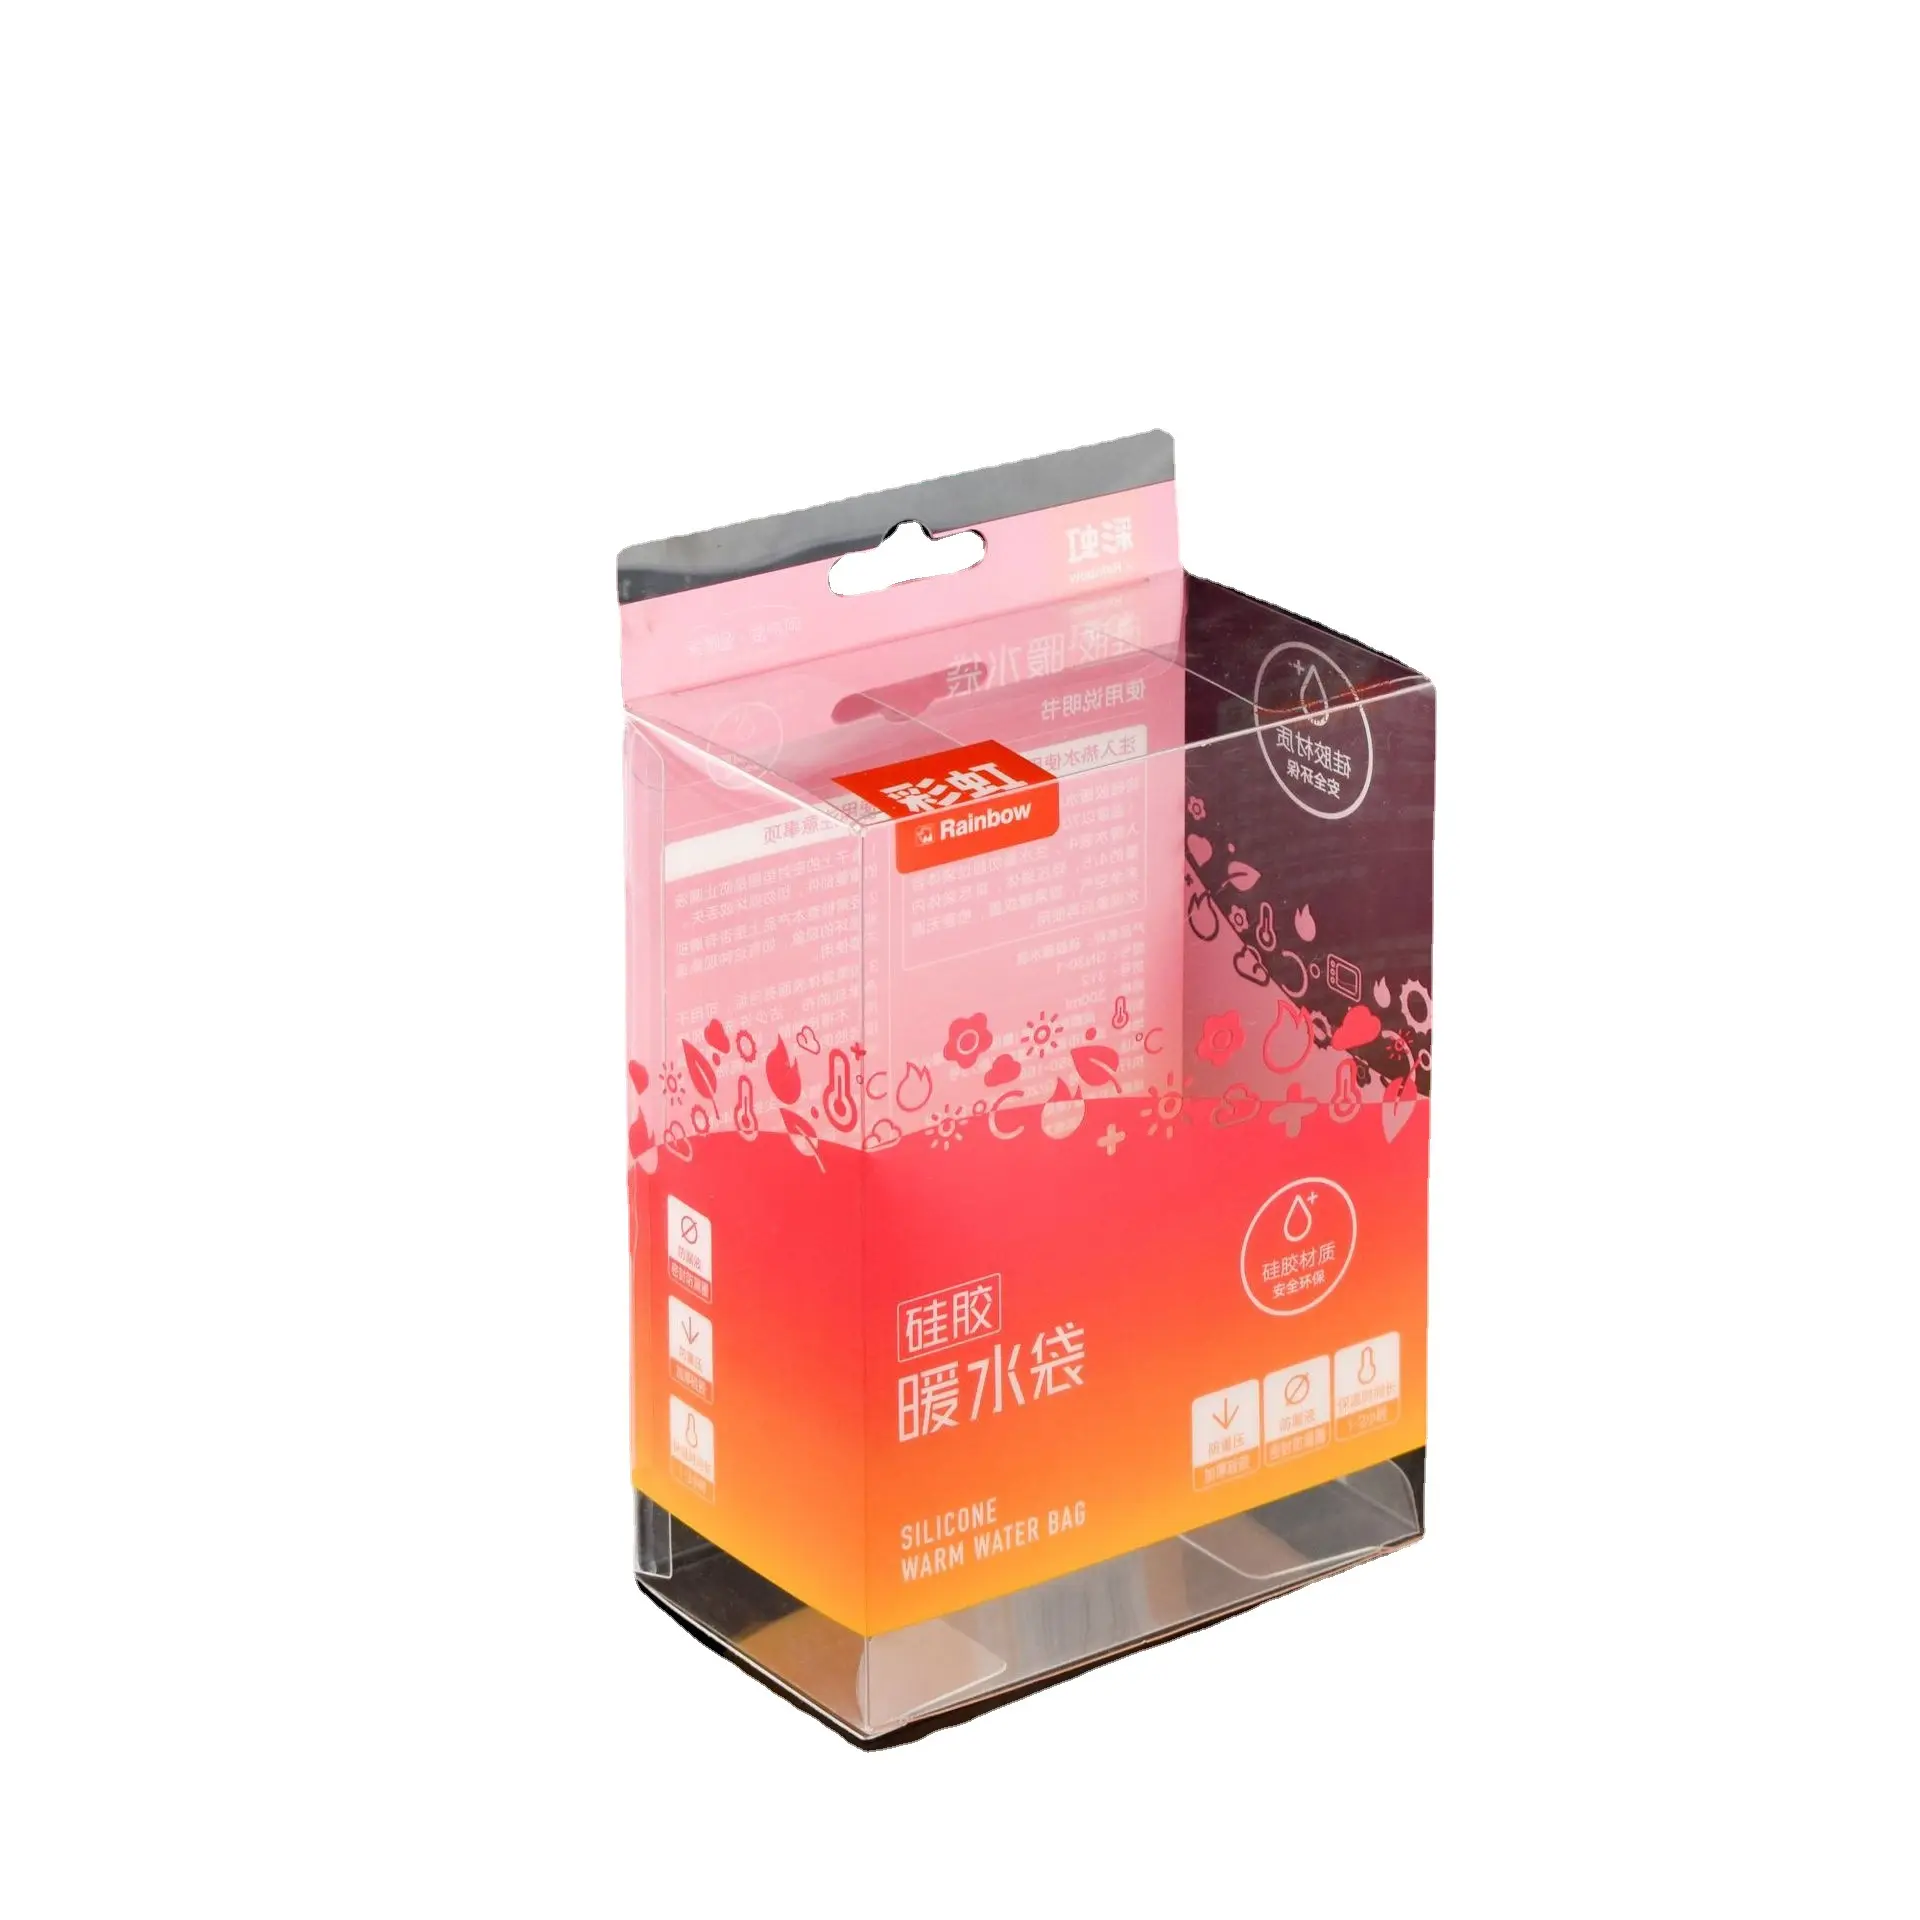 투명 플라스틱 상자 투명 크리스탈 상자 인사말 카드 사진 보관 케이스 접이식 디자인 보호 상자